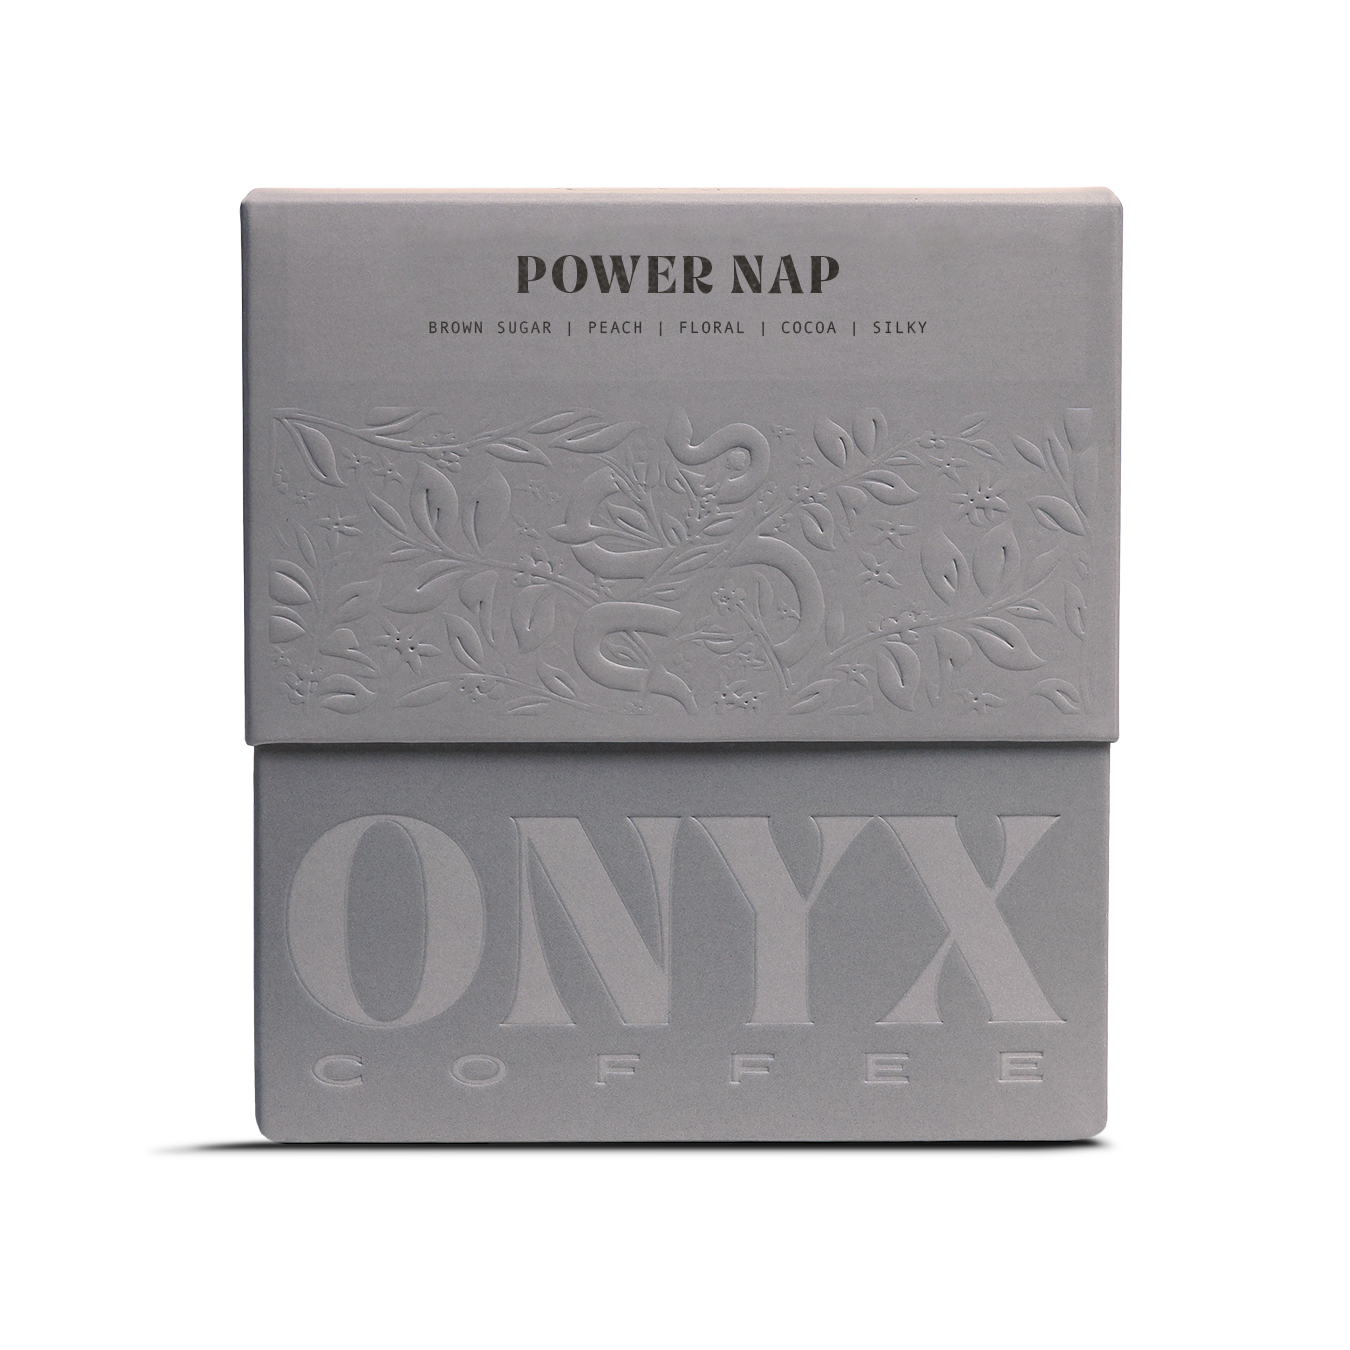 Power Nap "Half-Caf" (Whole Bean) by Onyx Coffee Lab